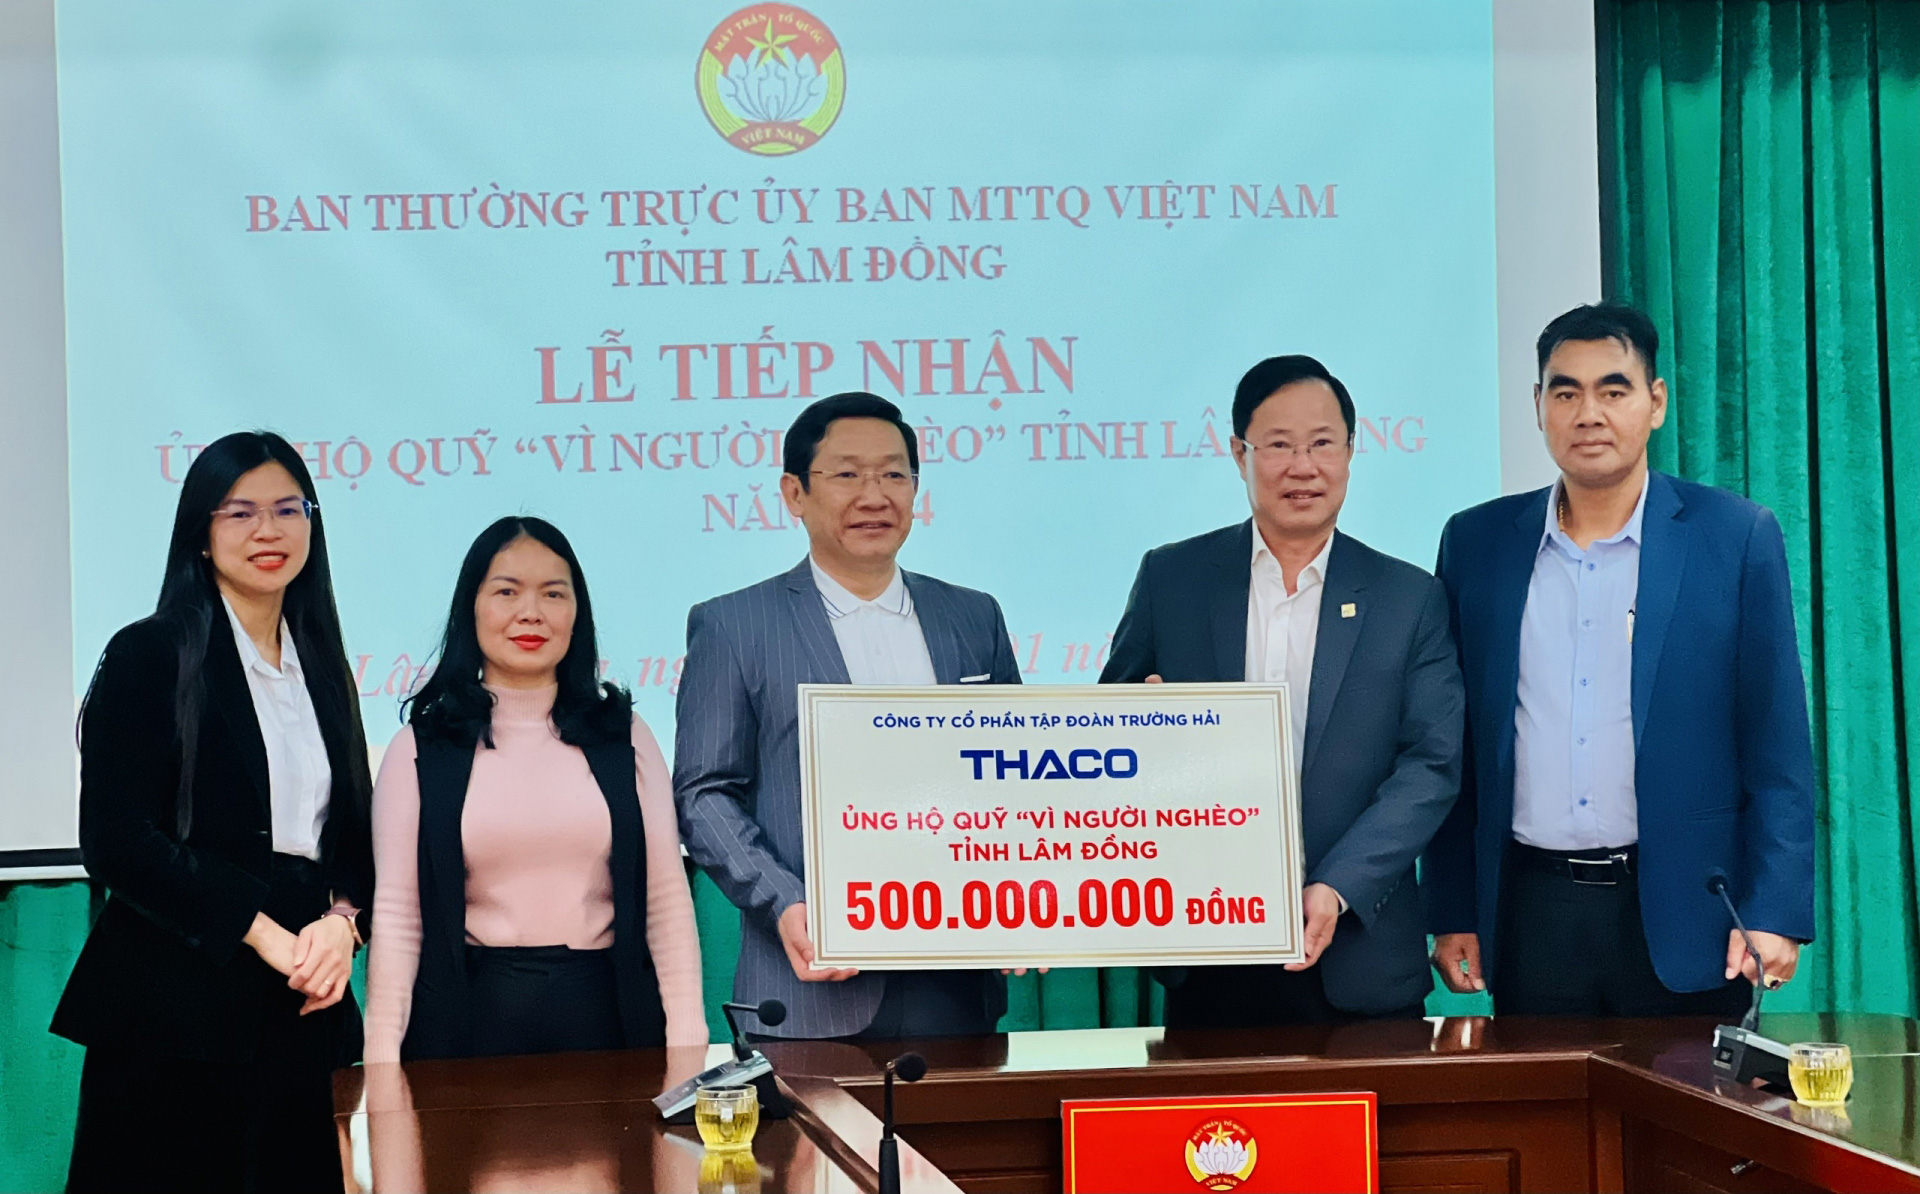 Công ty cổ phần Đầu tư Địa ốc Đại Quang Minh trao tặng 500 triệu đồng cho Quỹ "Vì người nghèo" tỉnh Lâm Đồng